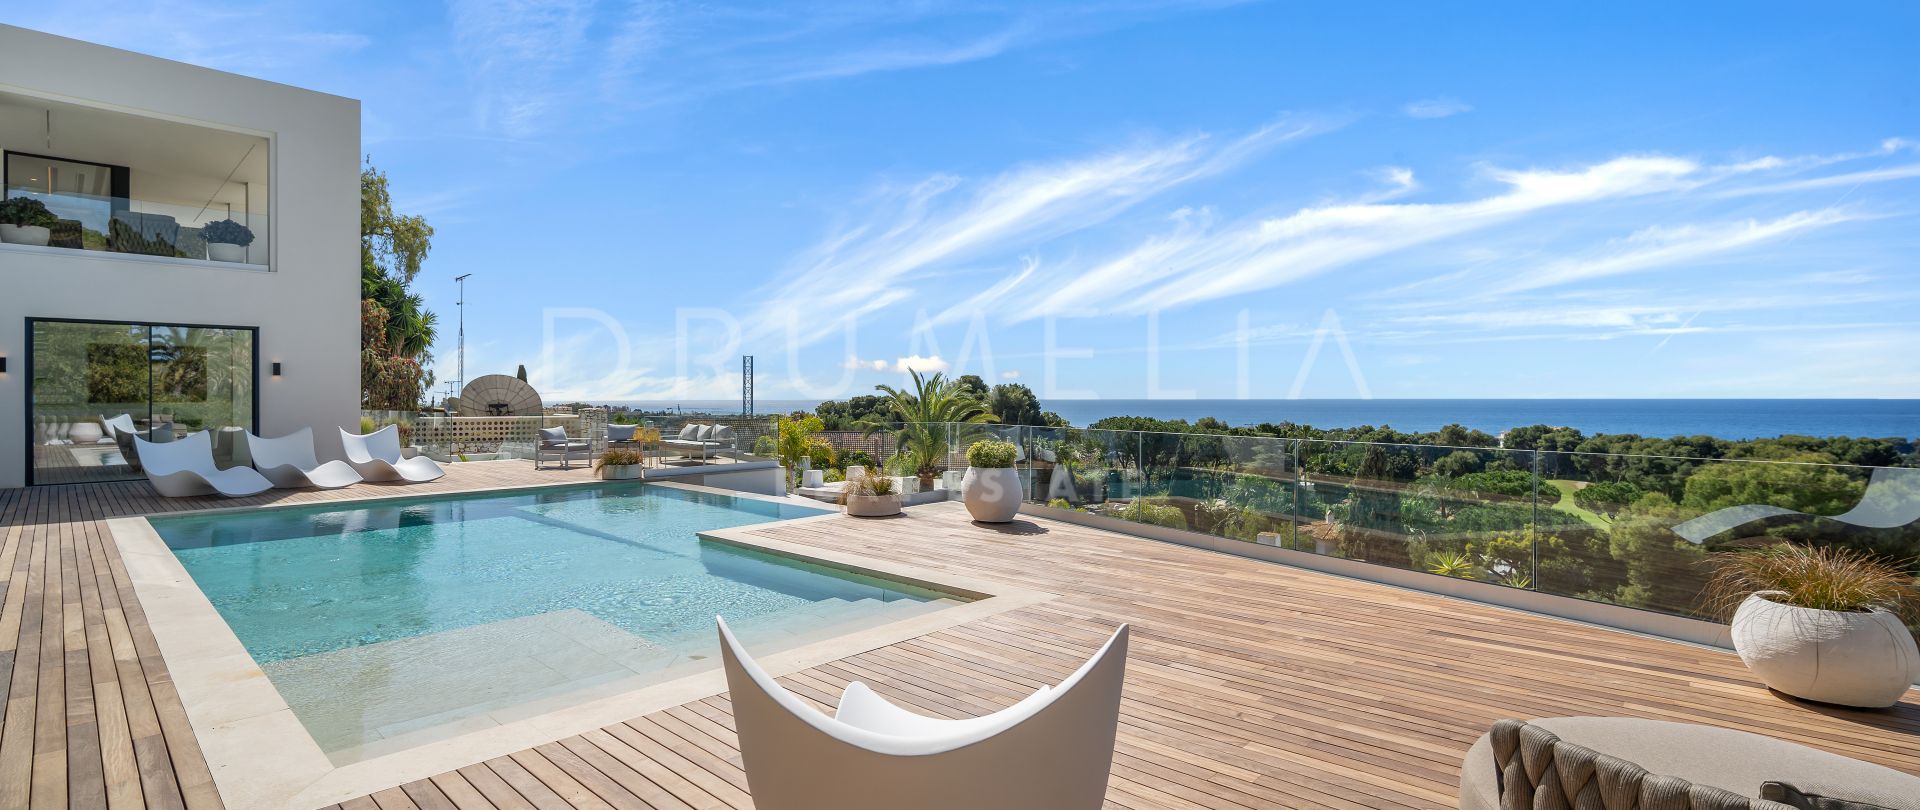 New stunning contemporary-style villa with magnificent sea views in prestigious Rio Real, Marbella